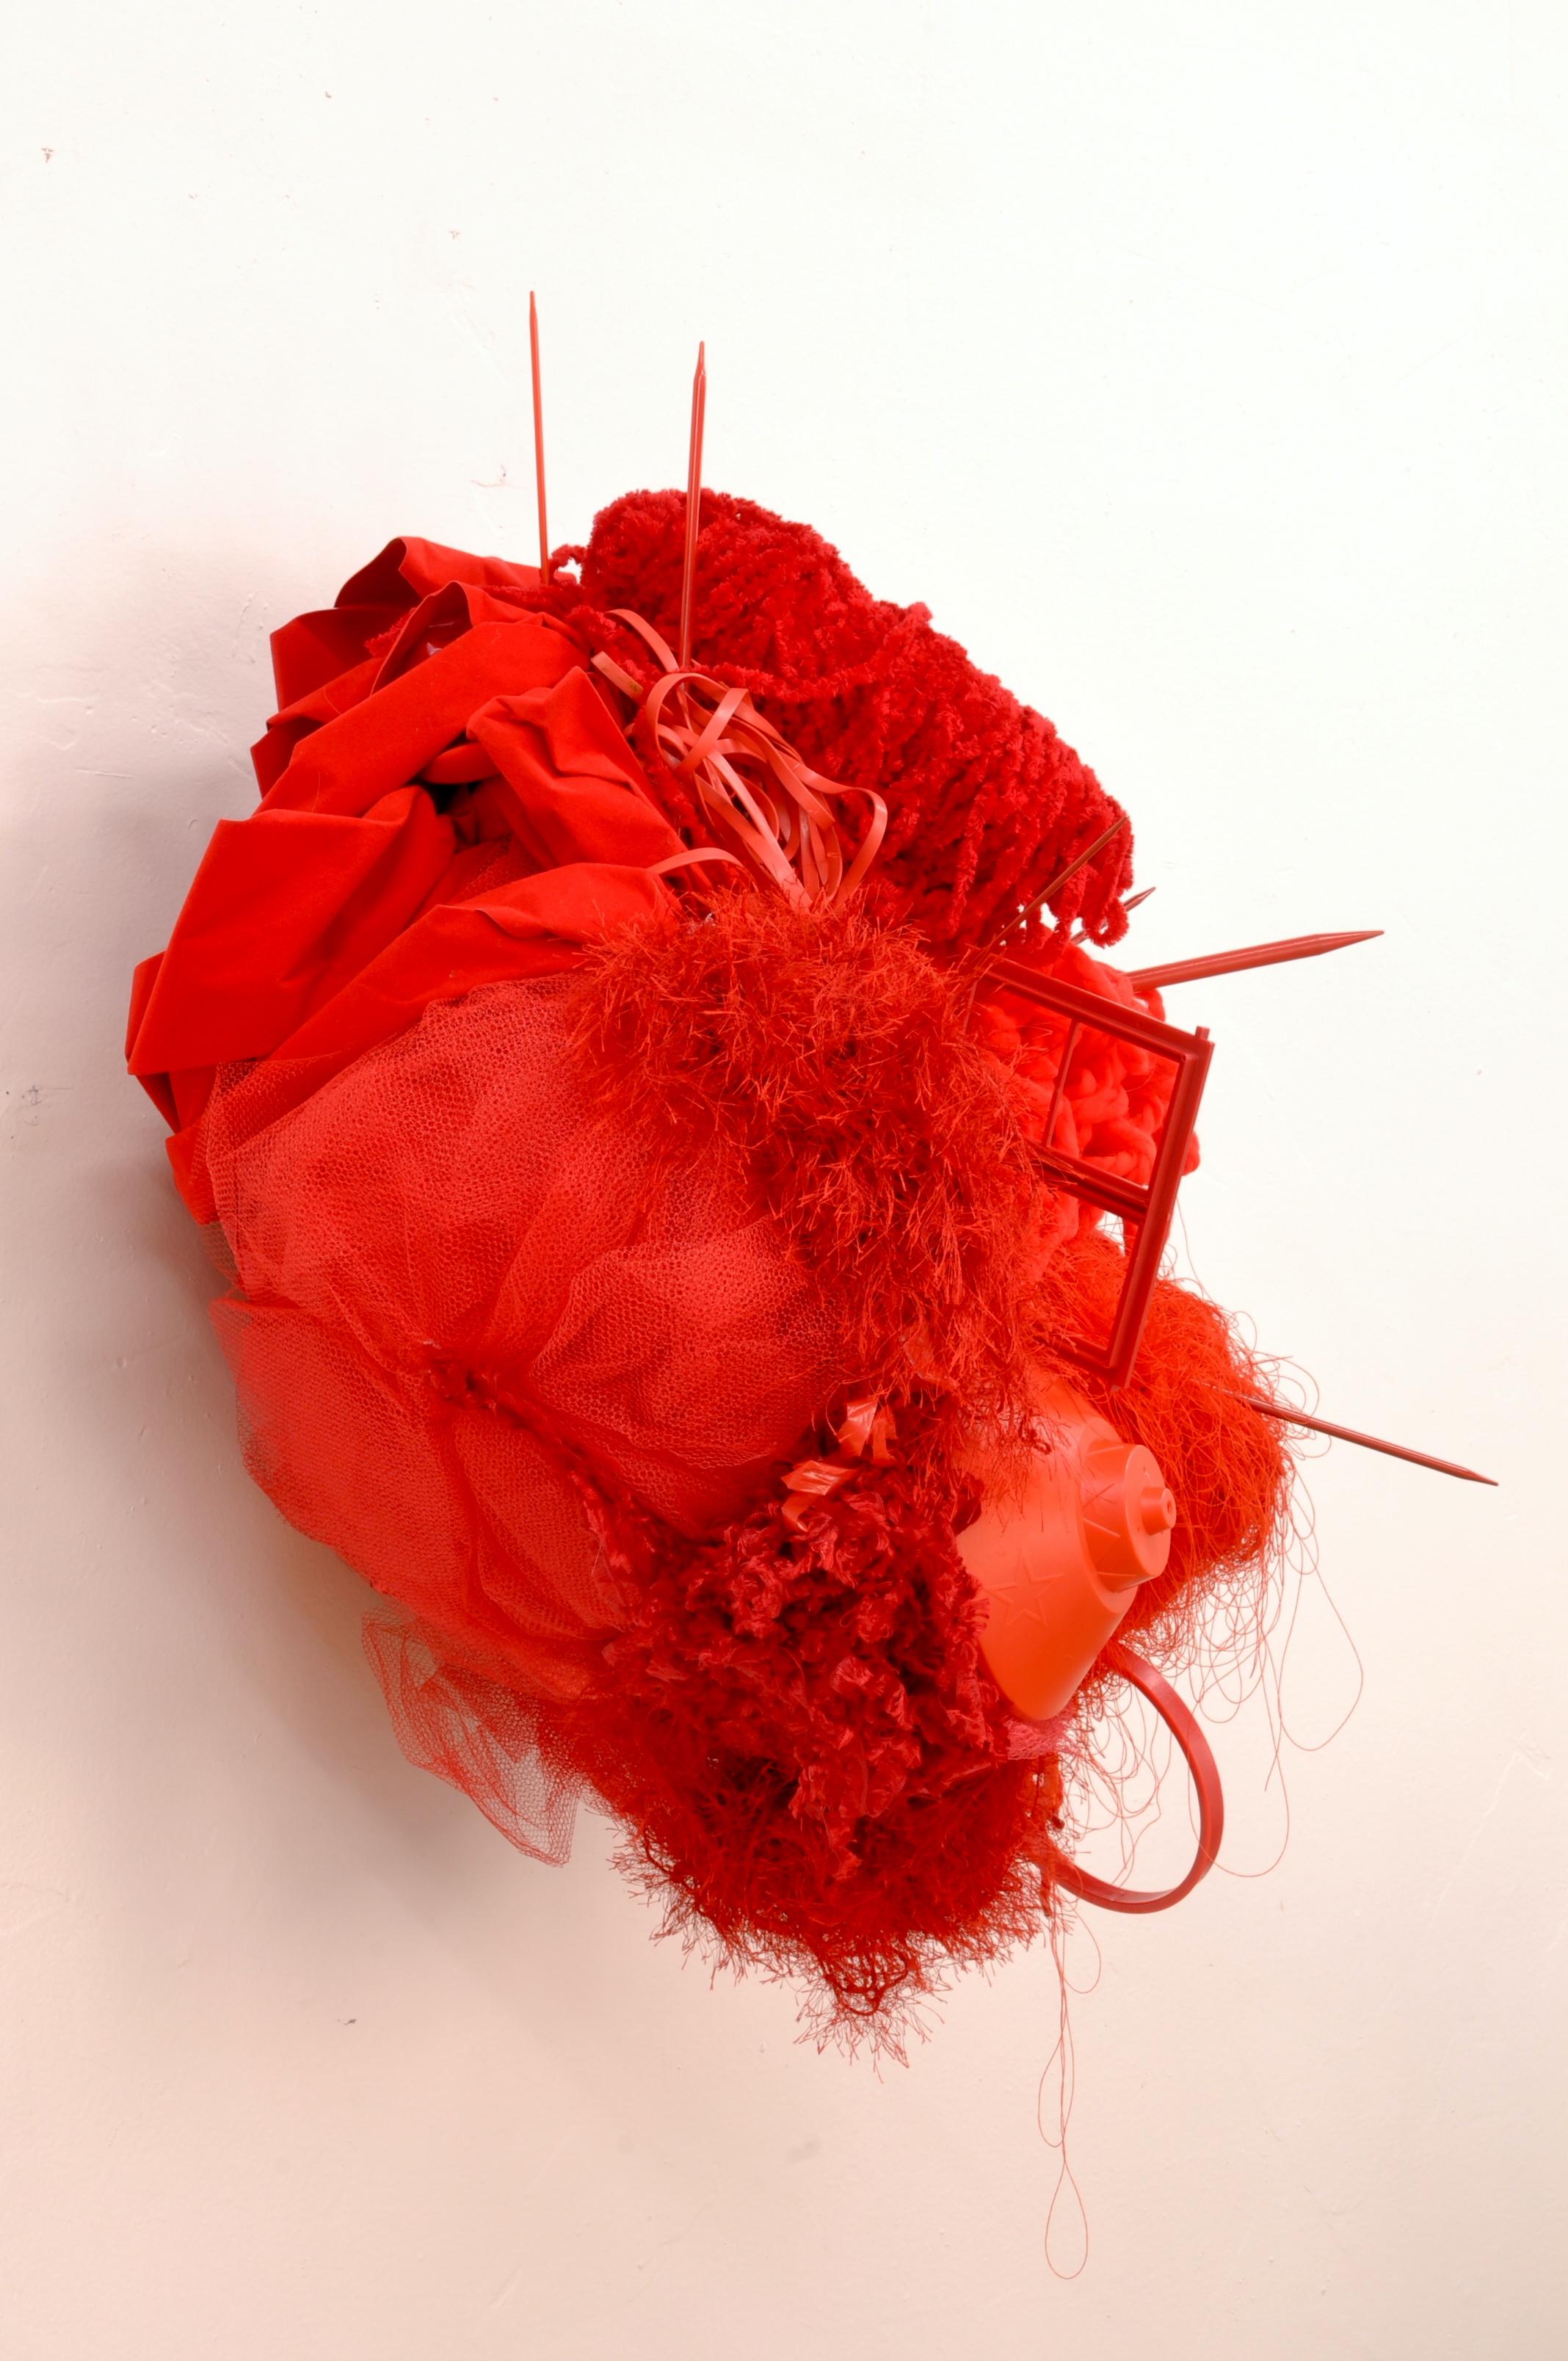 PRICK - Rote, monochrome Wand-Hängeskulptur mit gefundenen Objekten – Sculpture von Alicia Thompson